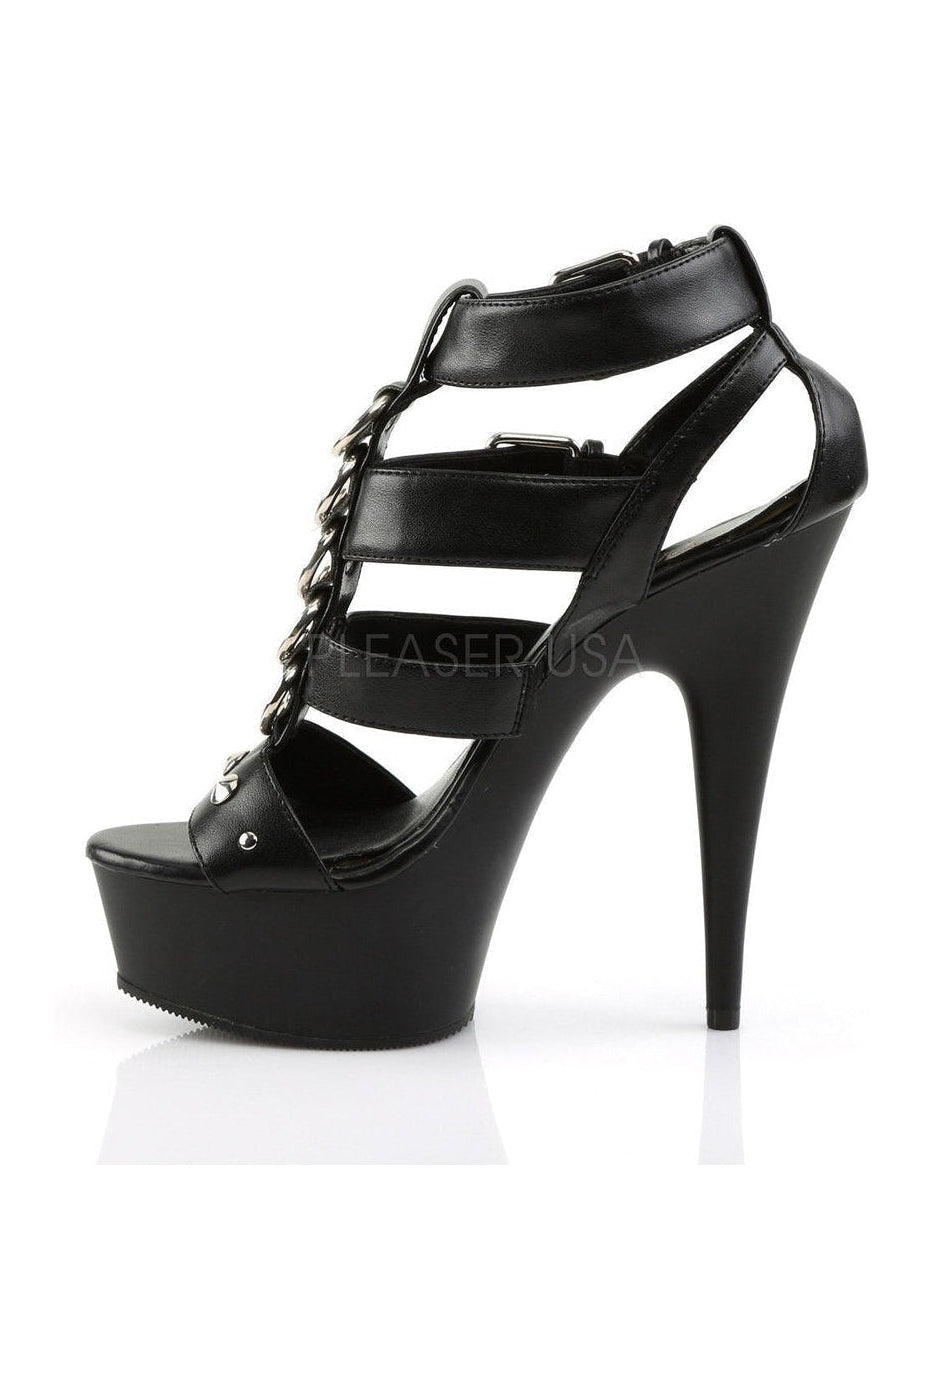 DELIGHT-658 Platform Sandal | Black Faux Leather-Pleaser-Sandals-SEXYSHOES.COM